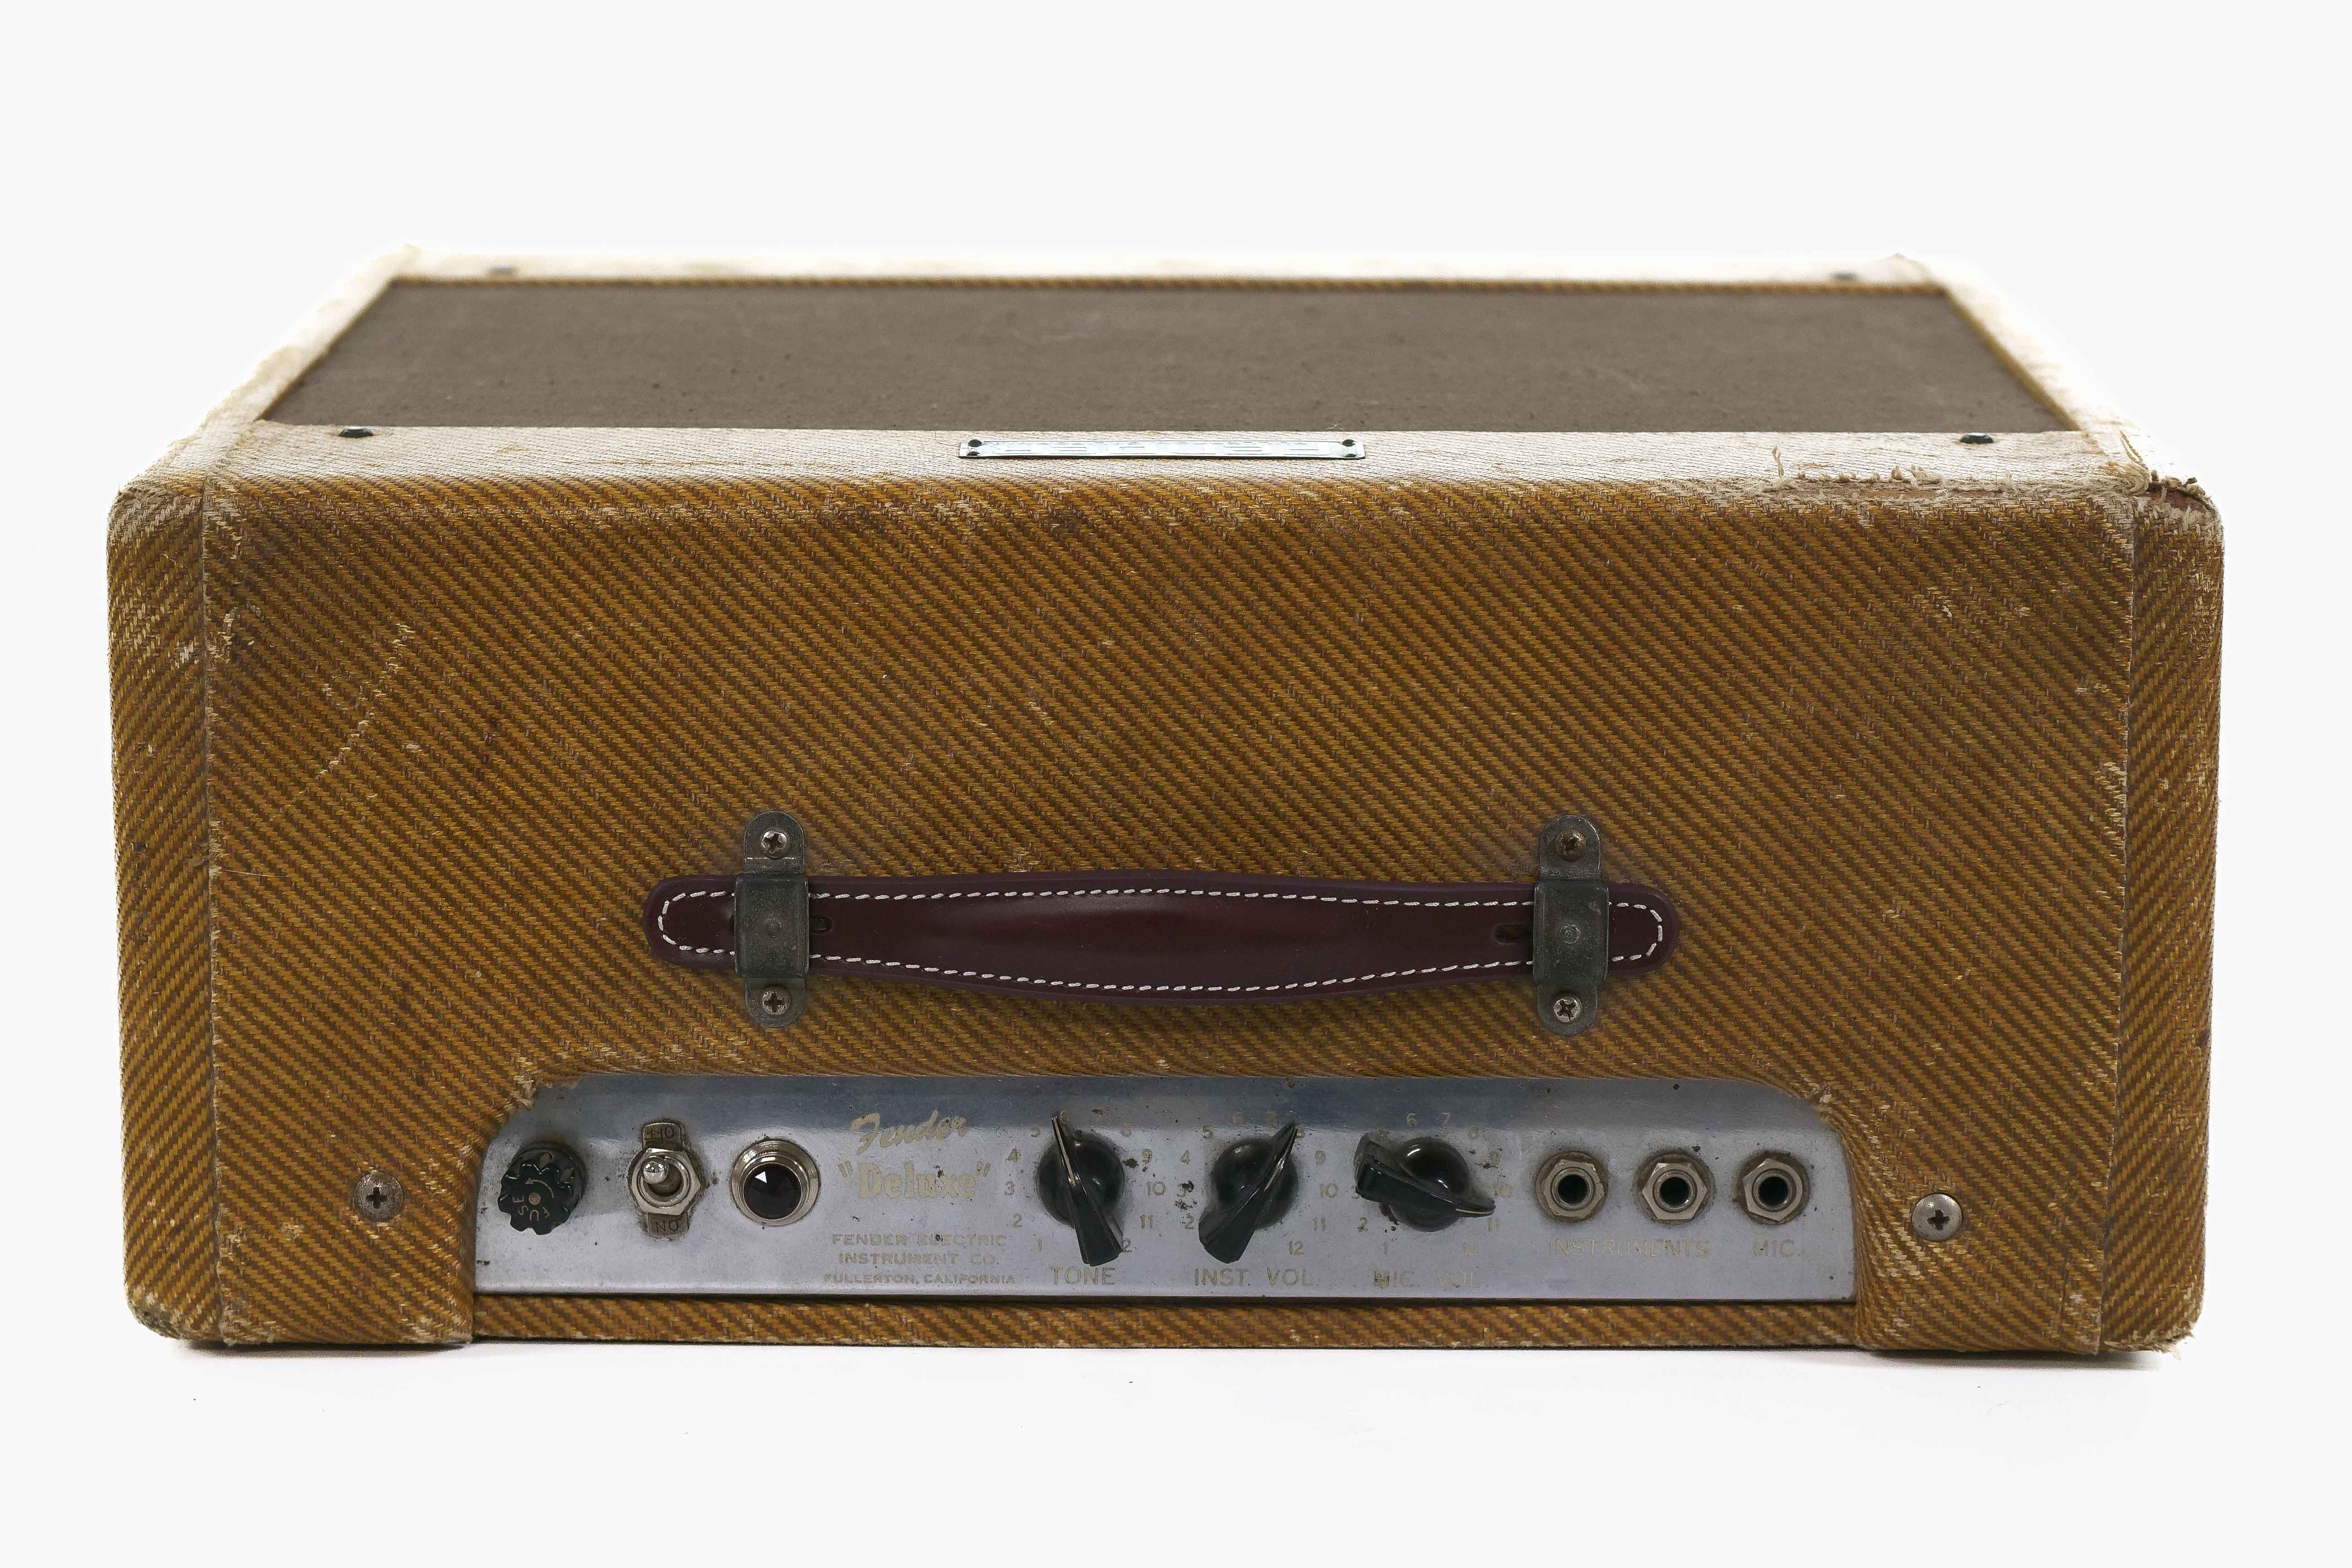 Fender 1953 Deluxe Amp